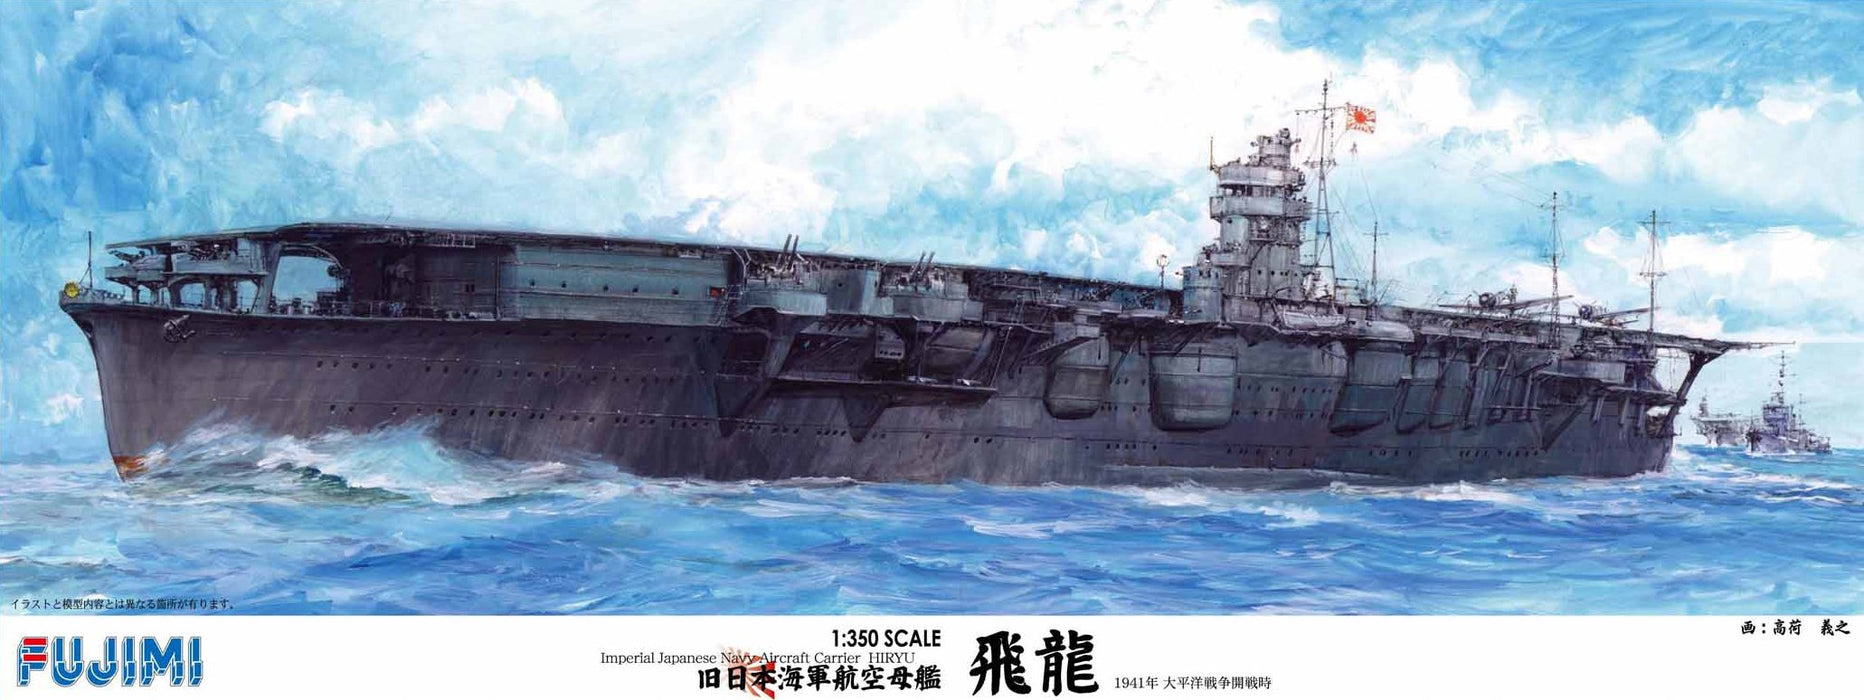 Fujimi Model 1/350 Ship Series Ehemaliger Flugzeugträger Hiryu Dx der kaiserlichen japanischen Marine